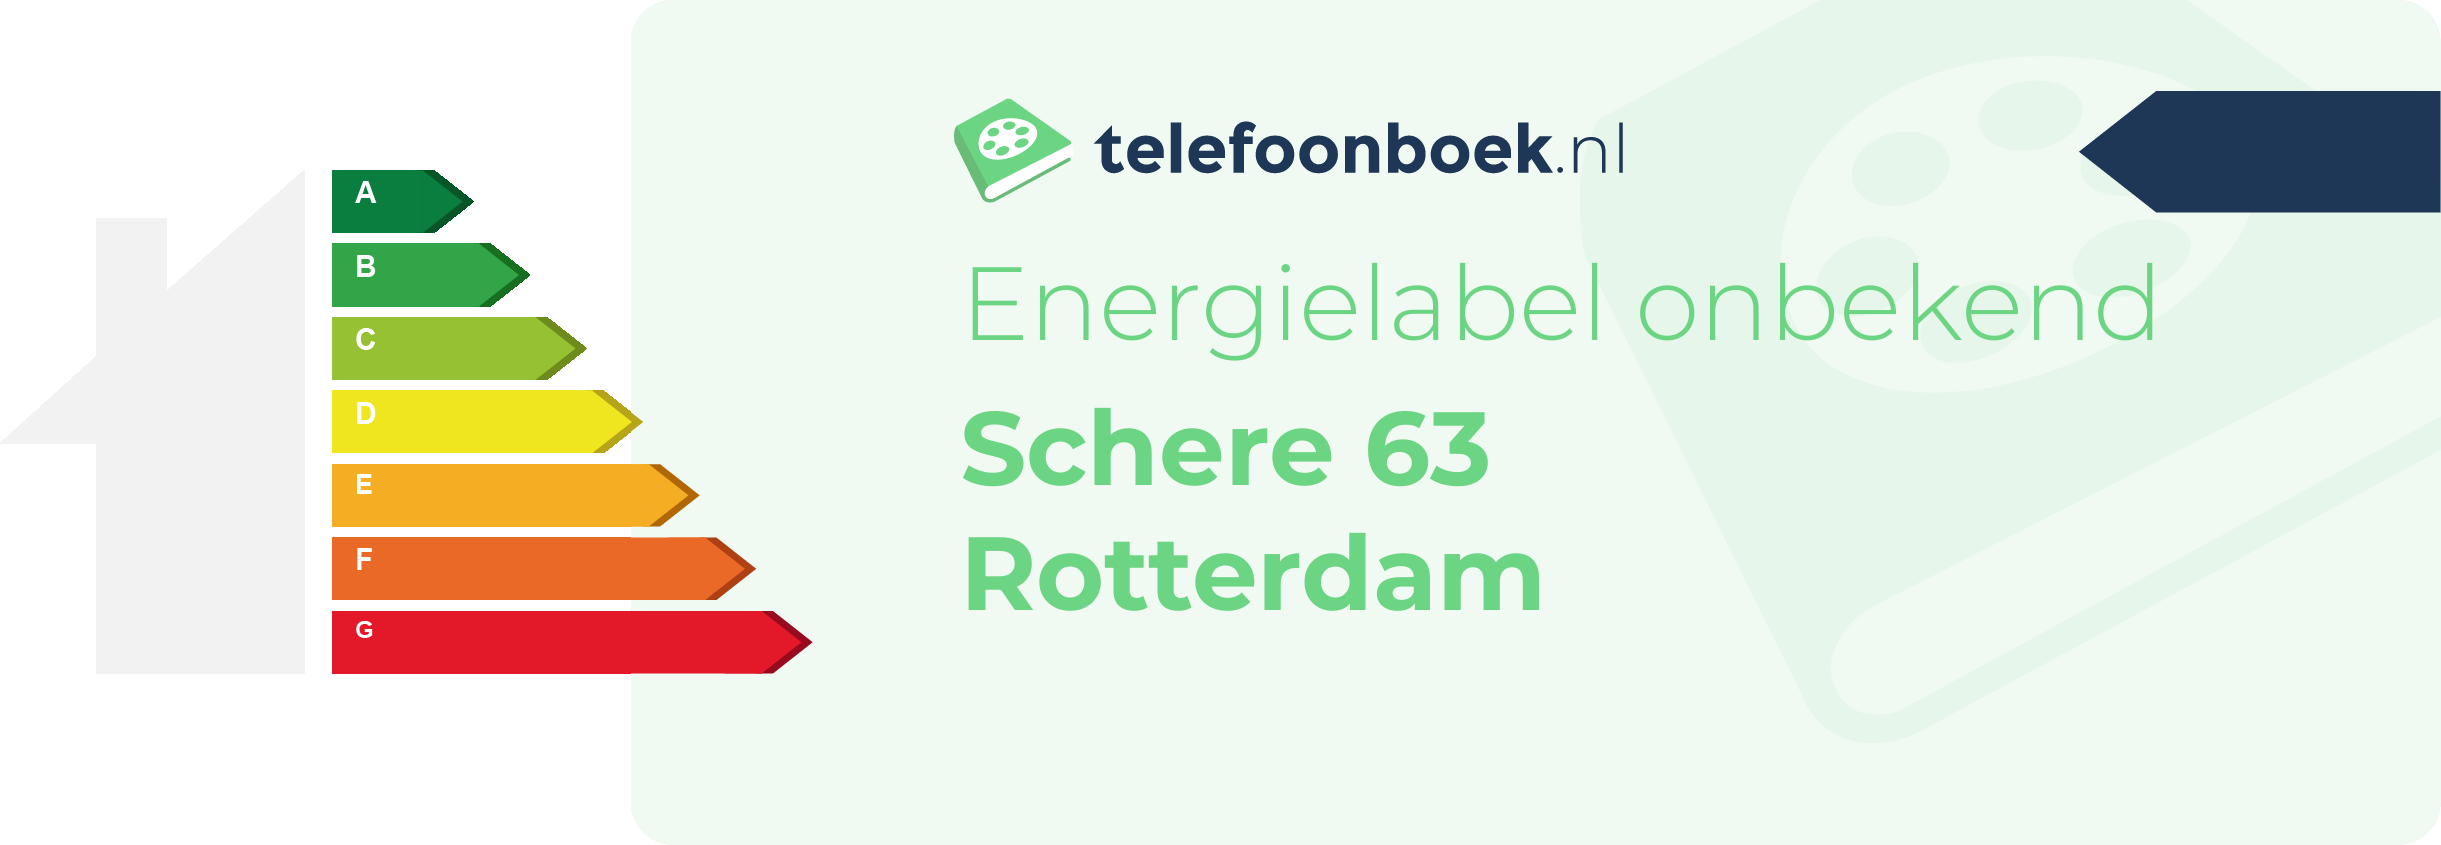 Energielabel Schere 63 Rotterdam